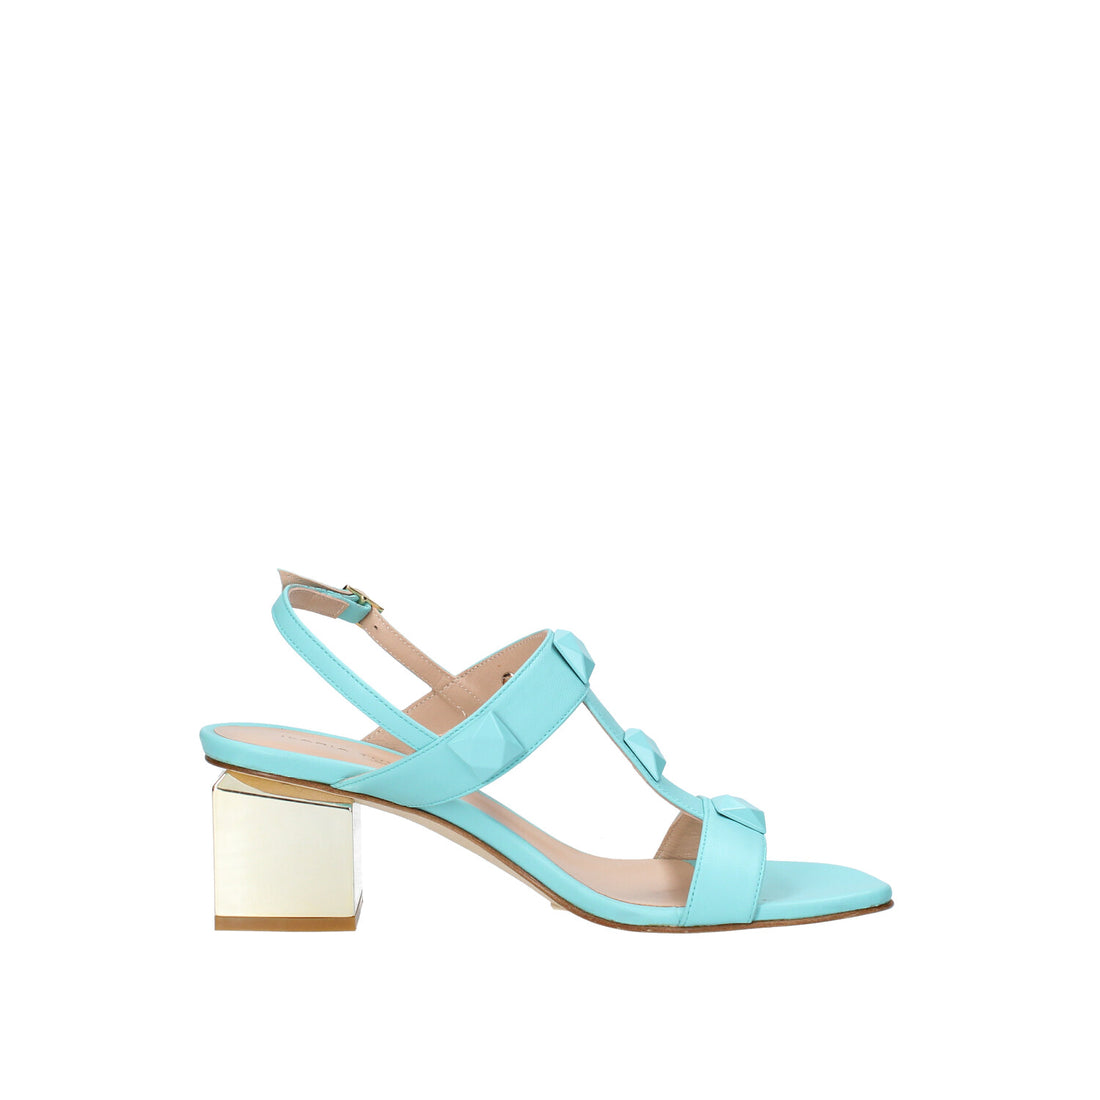 Sandalo con Tacco Donna Ilaria Toschi
606-R19